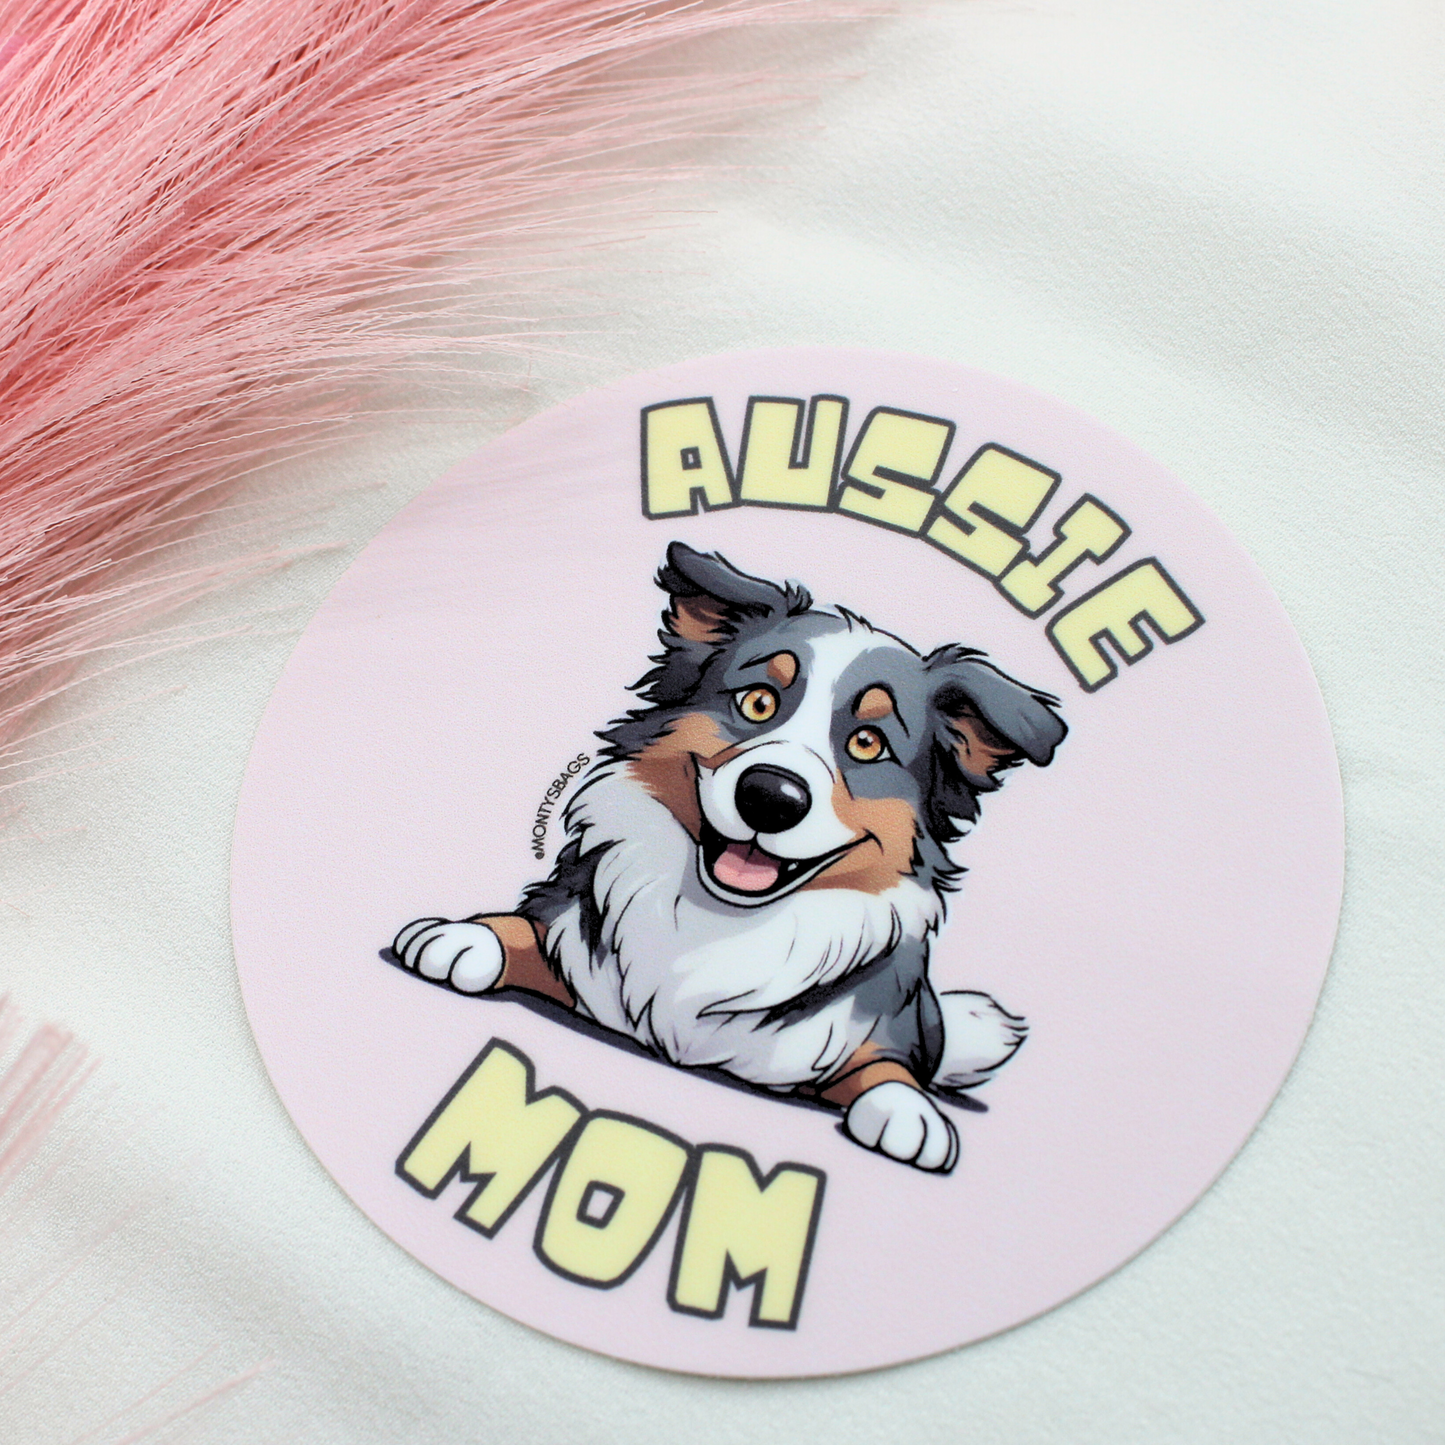 Australian Shepherd Mom Vinyl Sticker